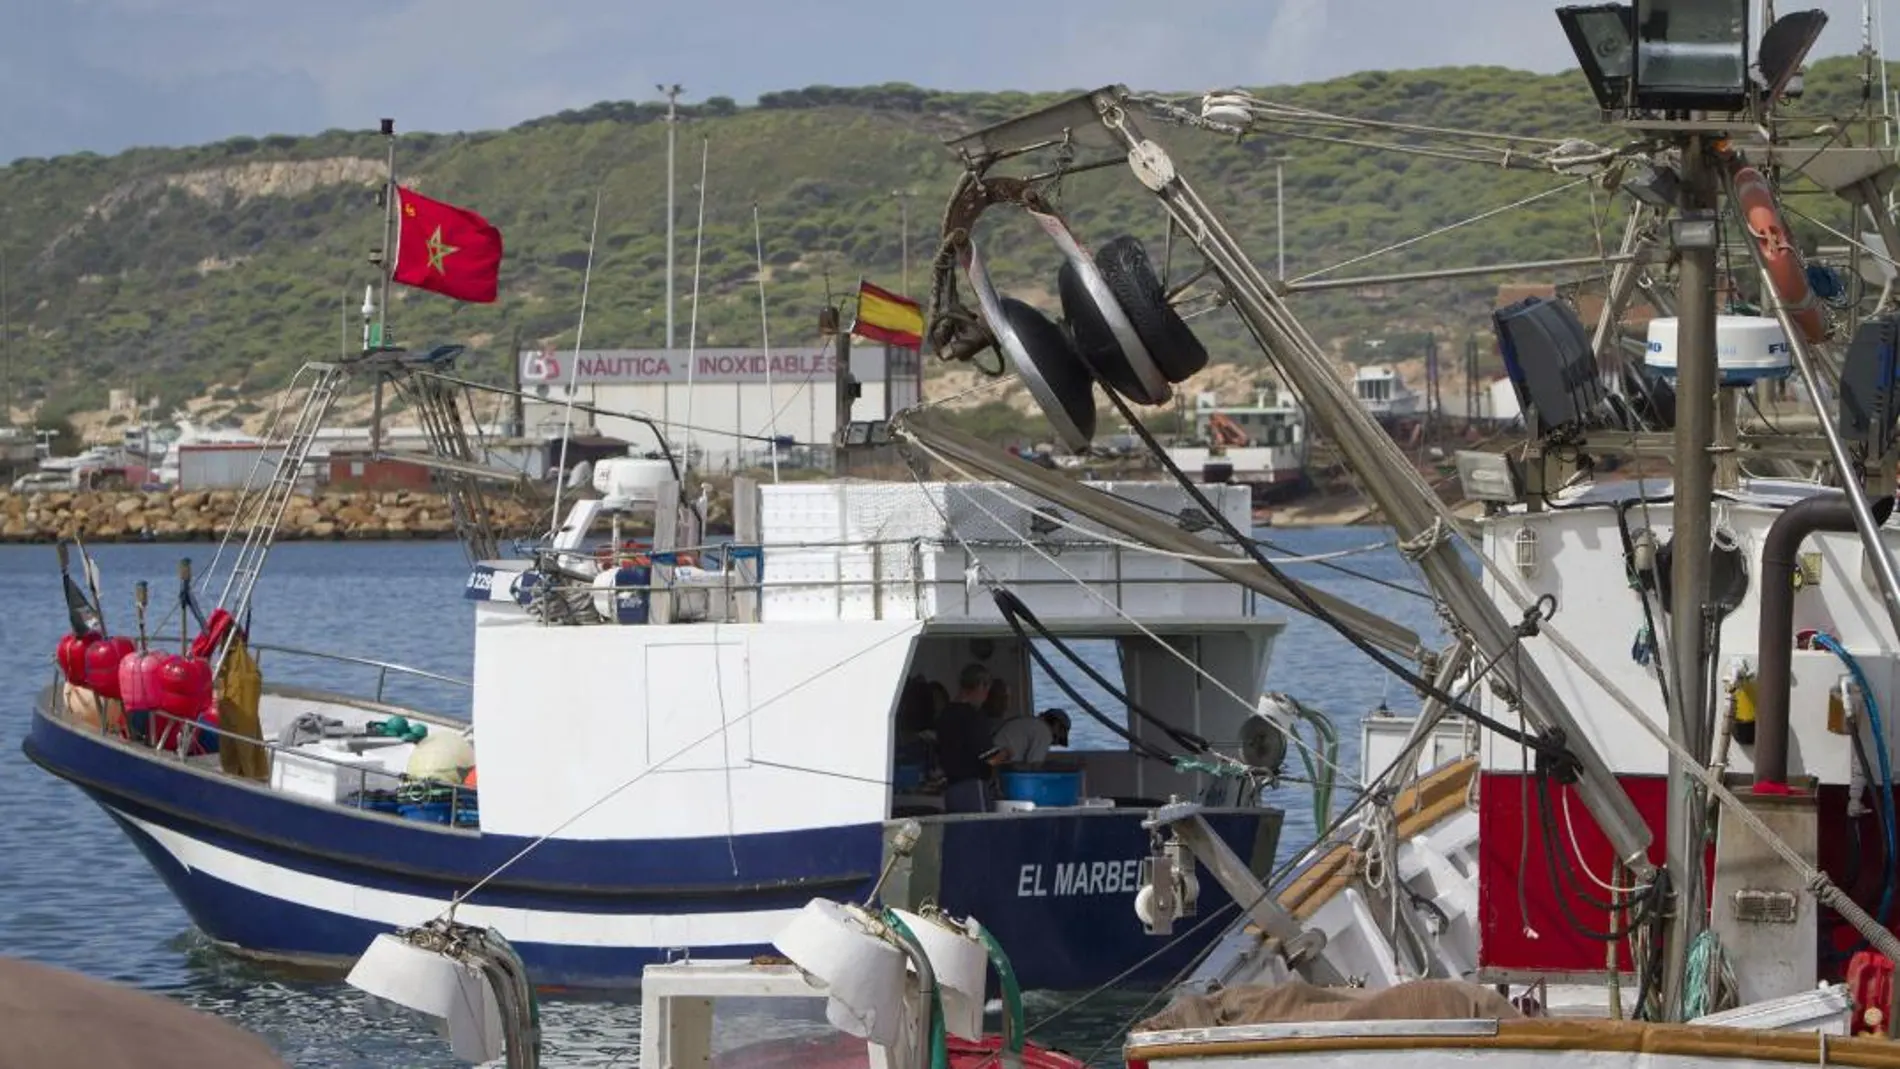 Los pescadores están pendientes del Tribunal de Justicia de la Unión Europea y de las relaciones diplomáticas entre España y Marruecos